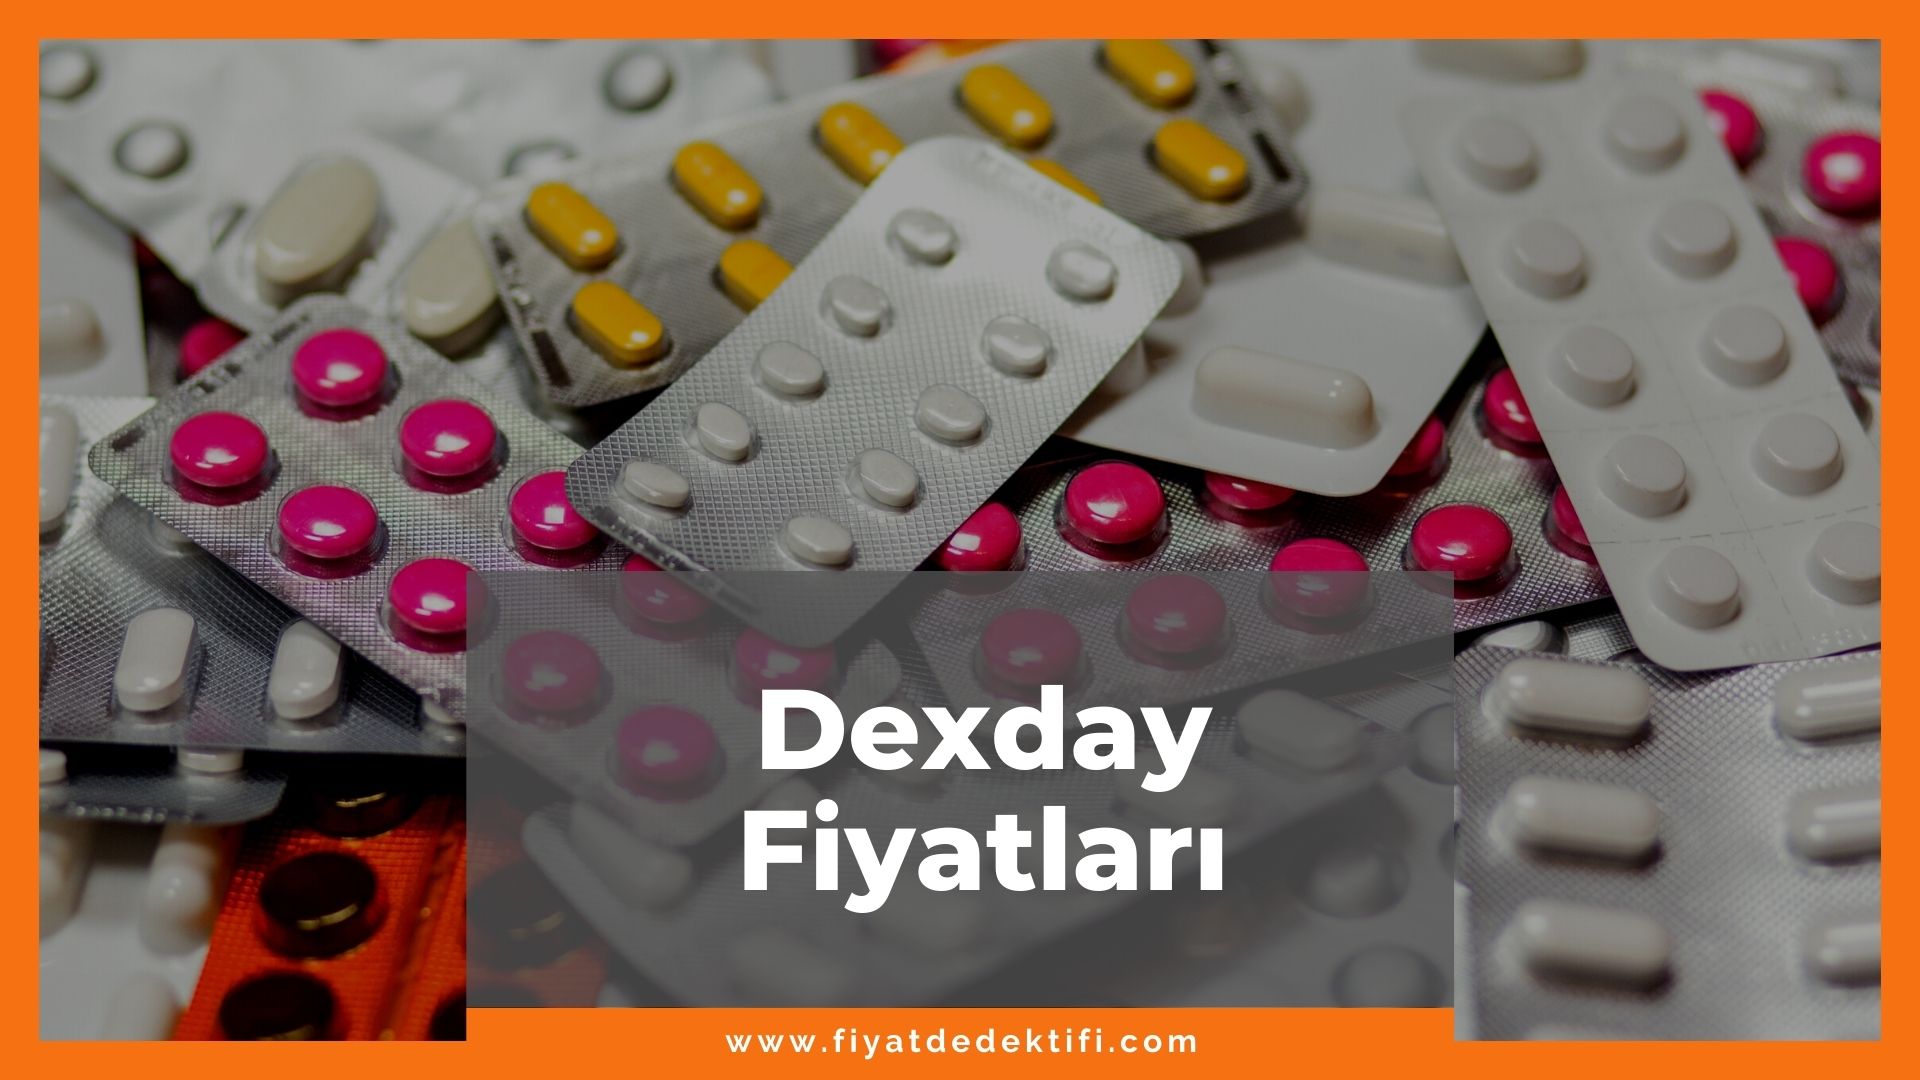 Dexday Fiyat 2021, Dexday Fiyatı, Dexday 50 mg Fiyatı, dexday zamlandı mı, dexday zamlı fiyatı ne kadar kaç tl oldu